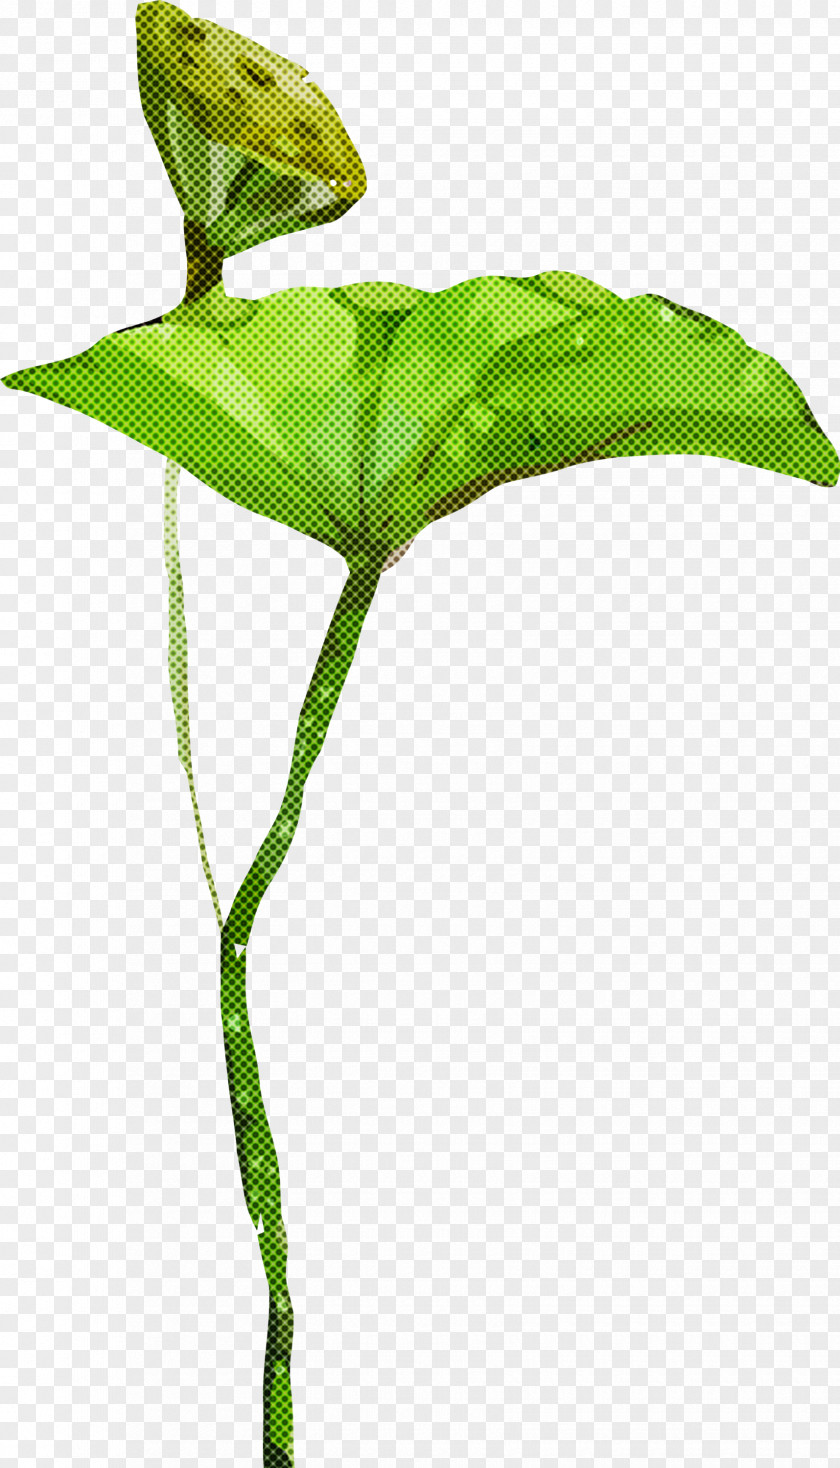 Jack-in-the-pulpit Leaf Flower Green Plant PNG